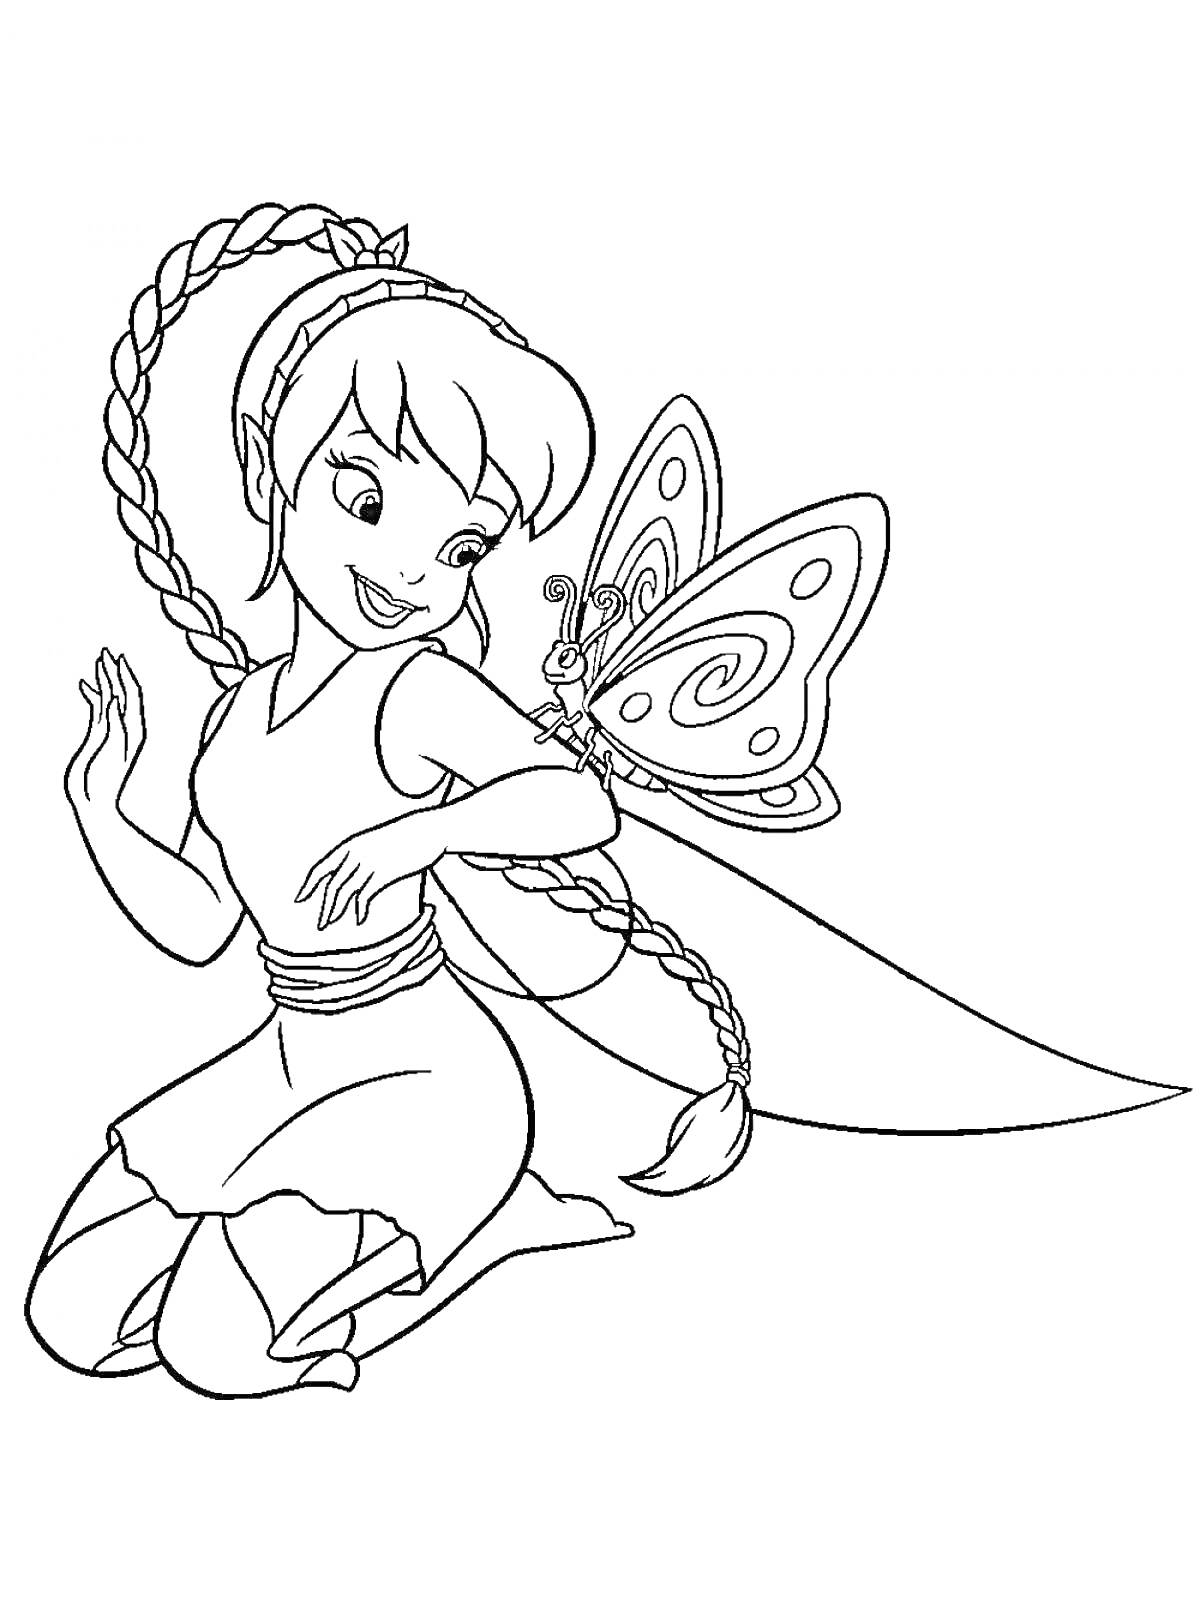 Раскраска Фея Динь-Динь сидит на коленях с косой и крыльями бабочки